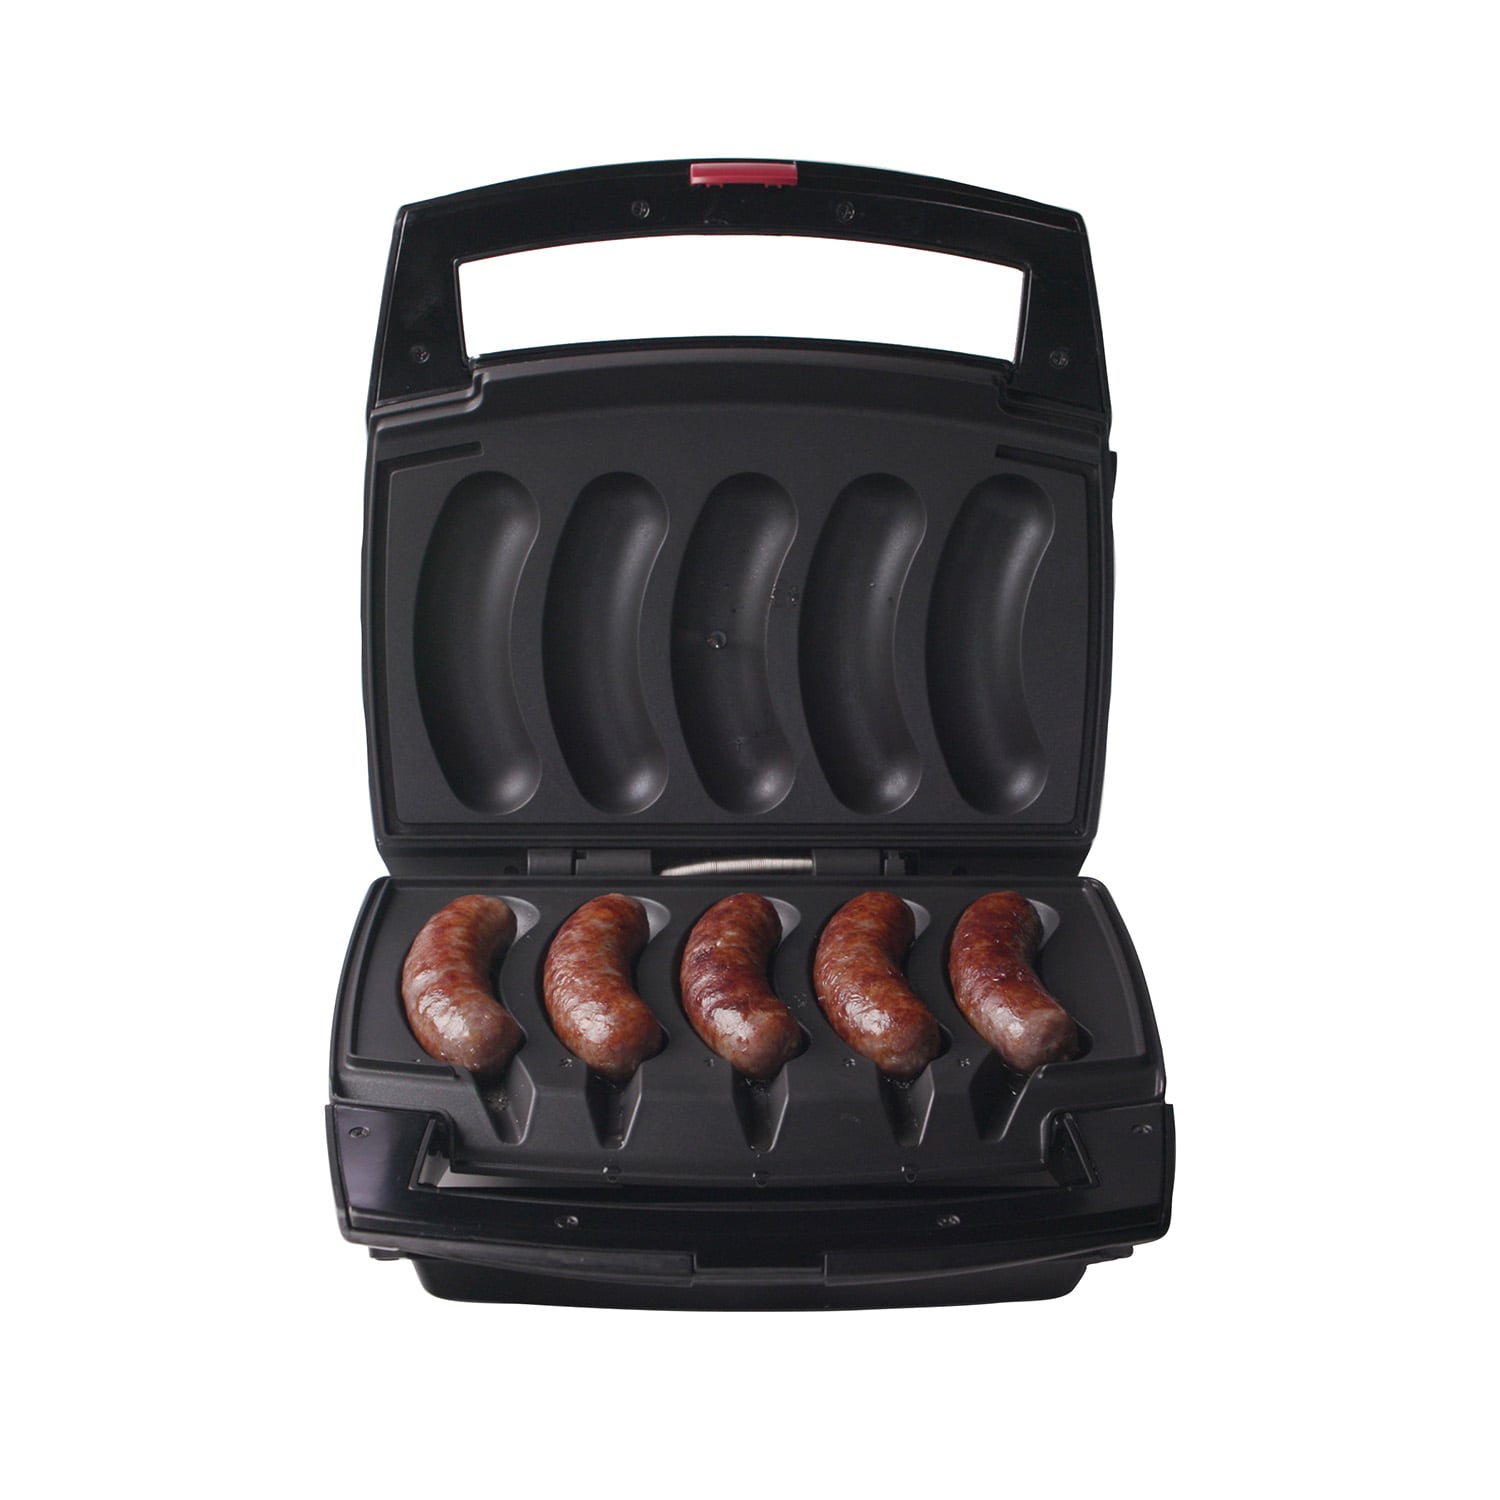 Johnsonville BTG0498 Sizzling Sausage Indoor Electric Grill - Black for  sale online